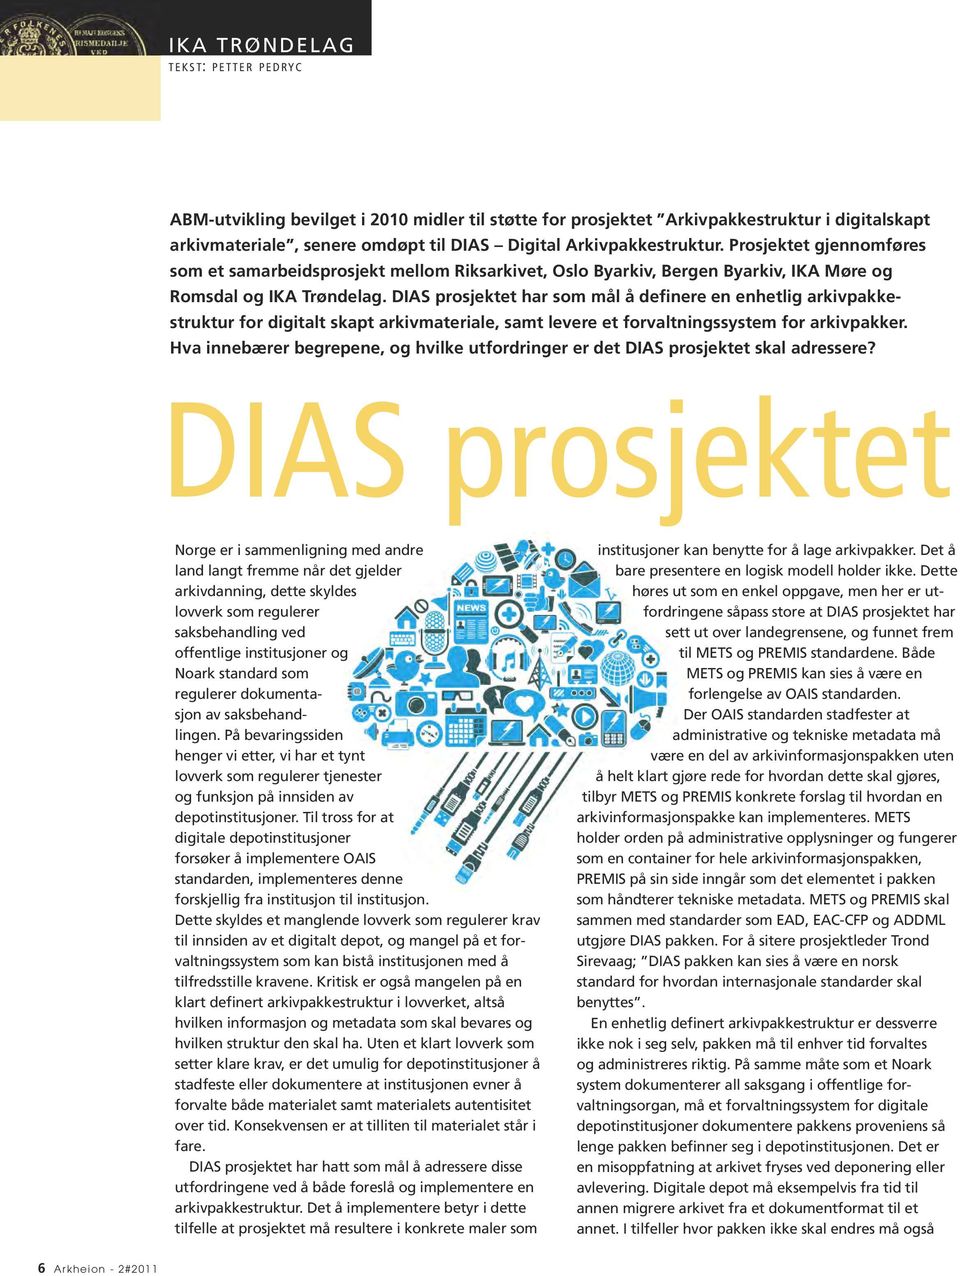 DIAS prosjektet har som mål å definere en enhetlig arkivpakke - struktur for digitalt skapt arkivmateriale, samt levere et forvaltningssystem for arkivpakker.